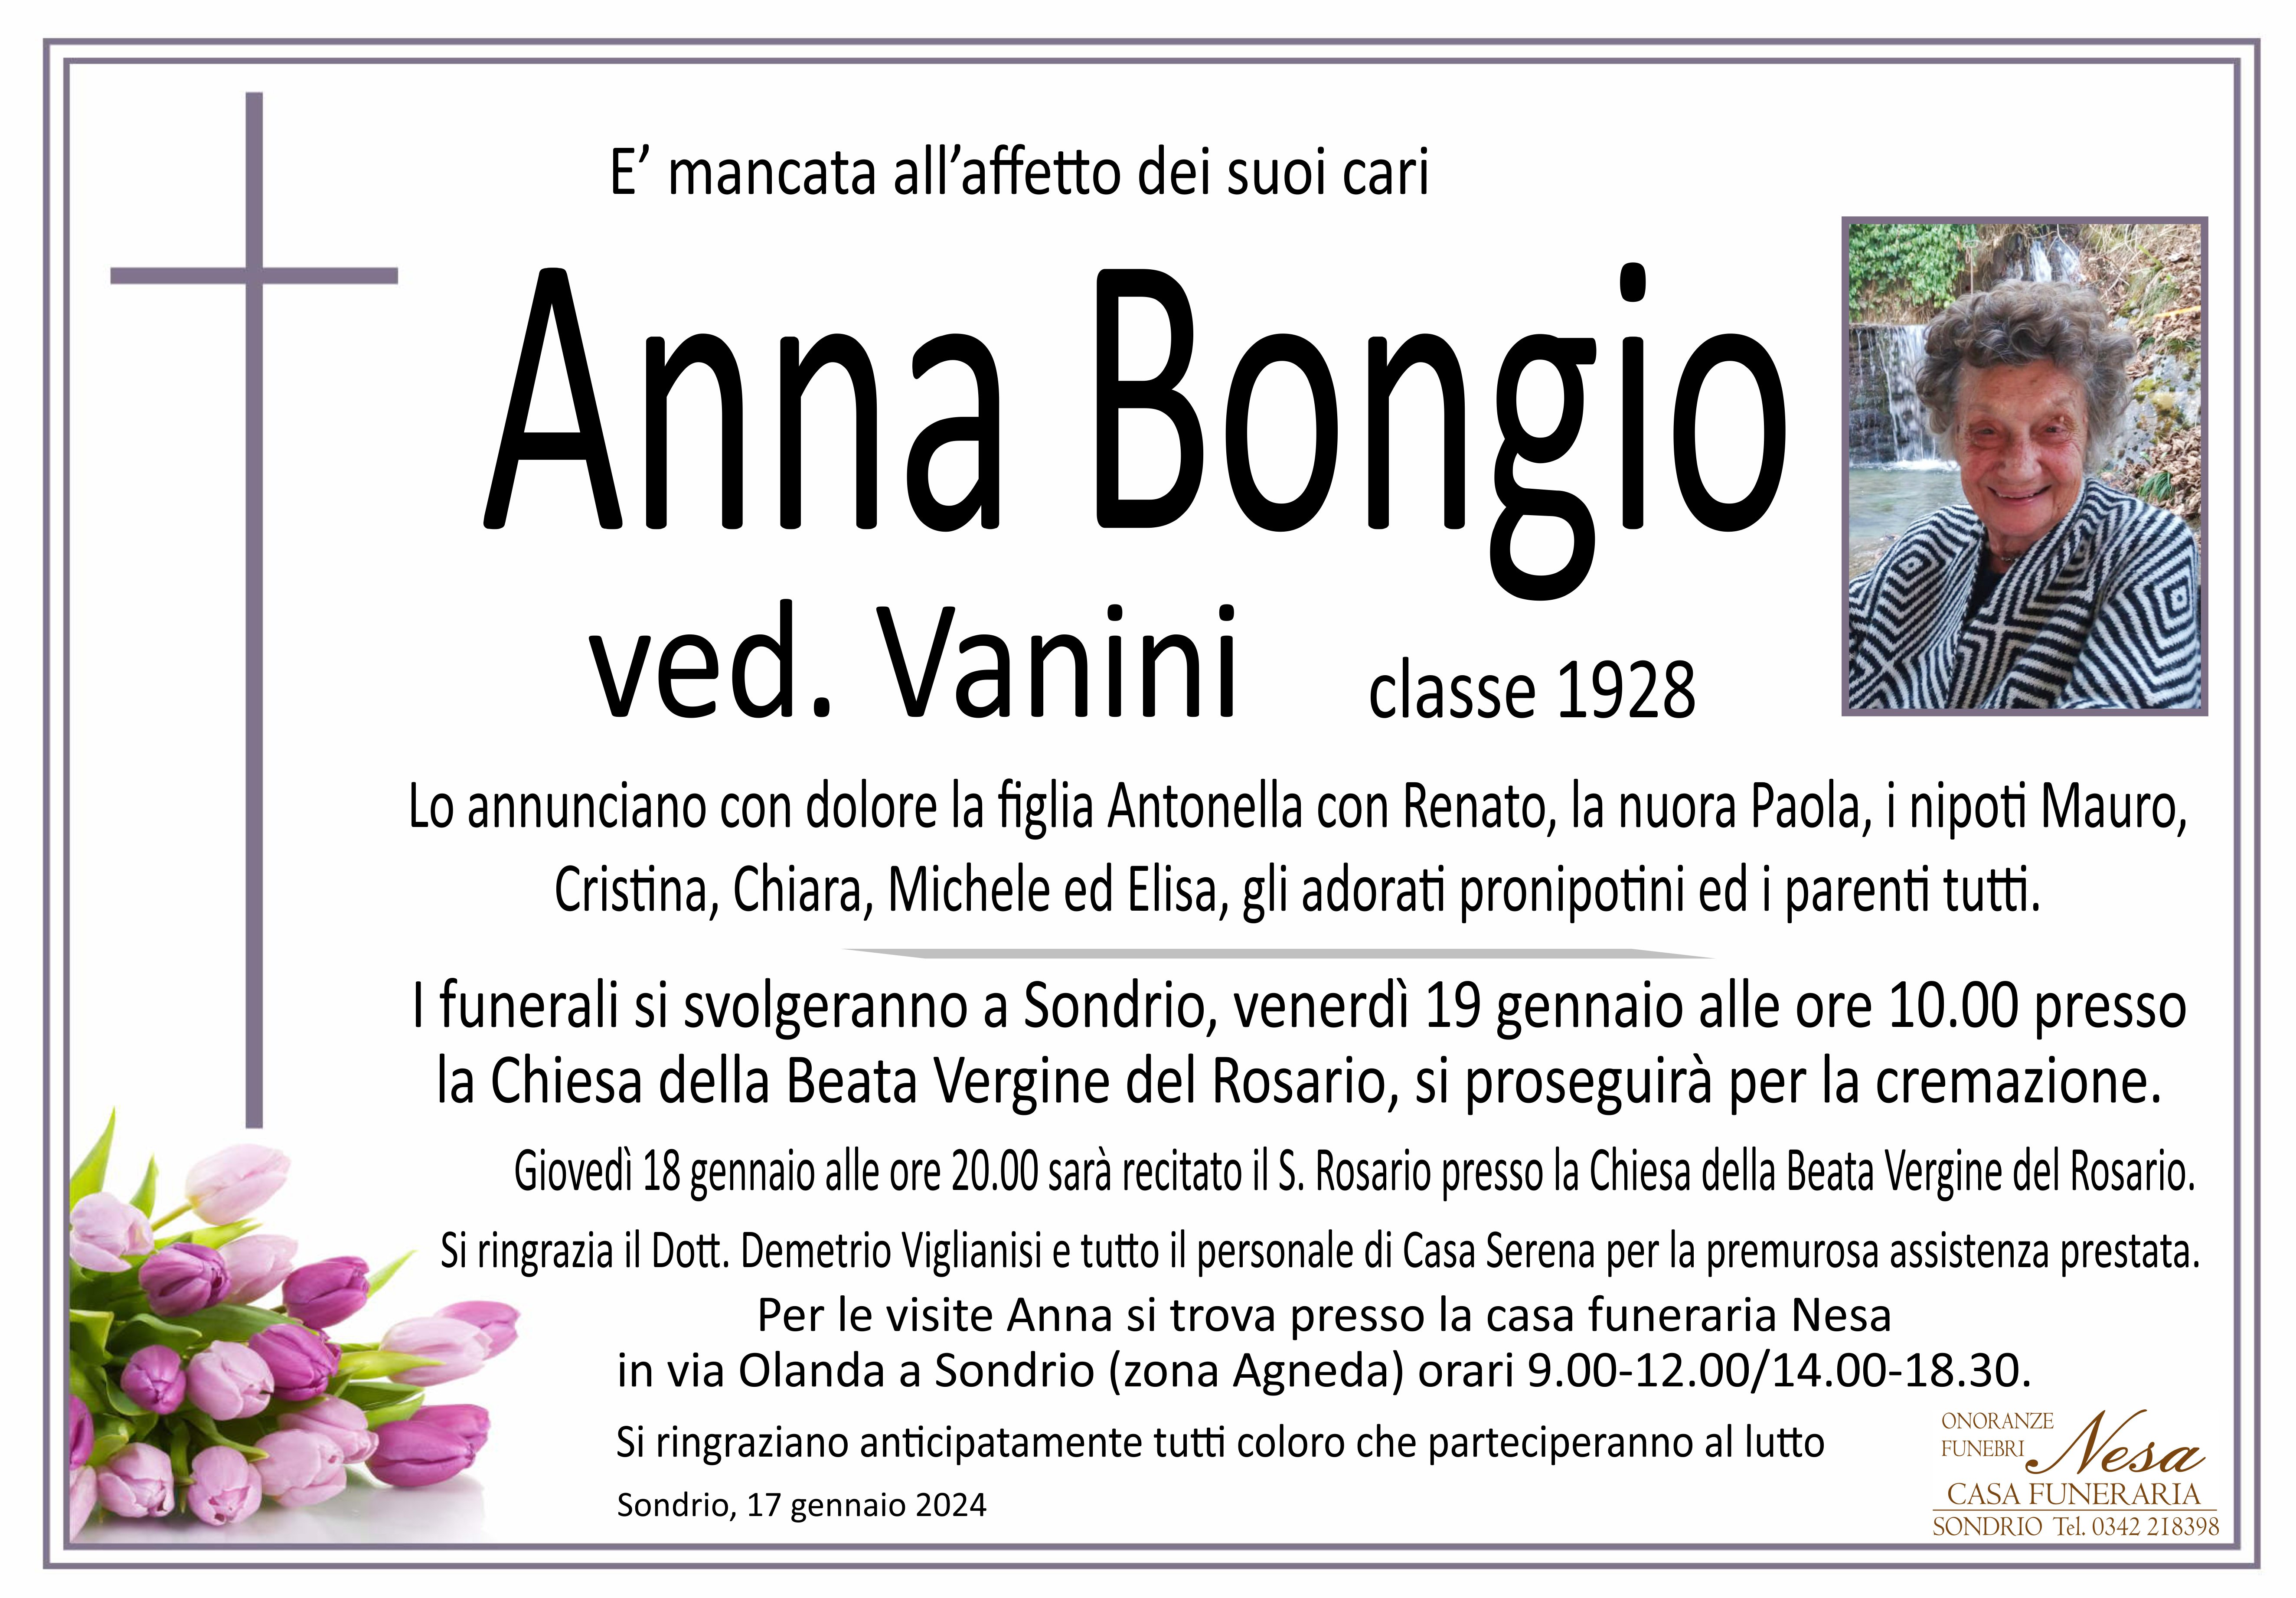 Necrologio Anna Bongio ved. Vanini